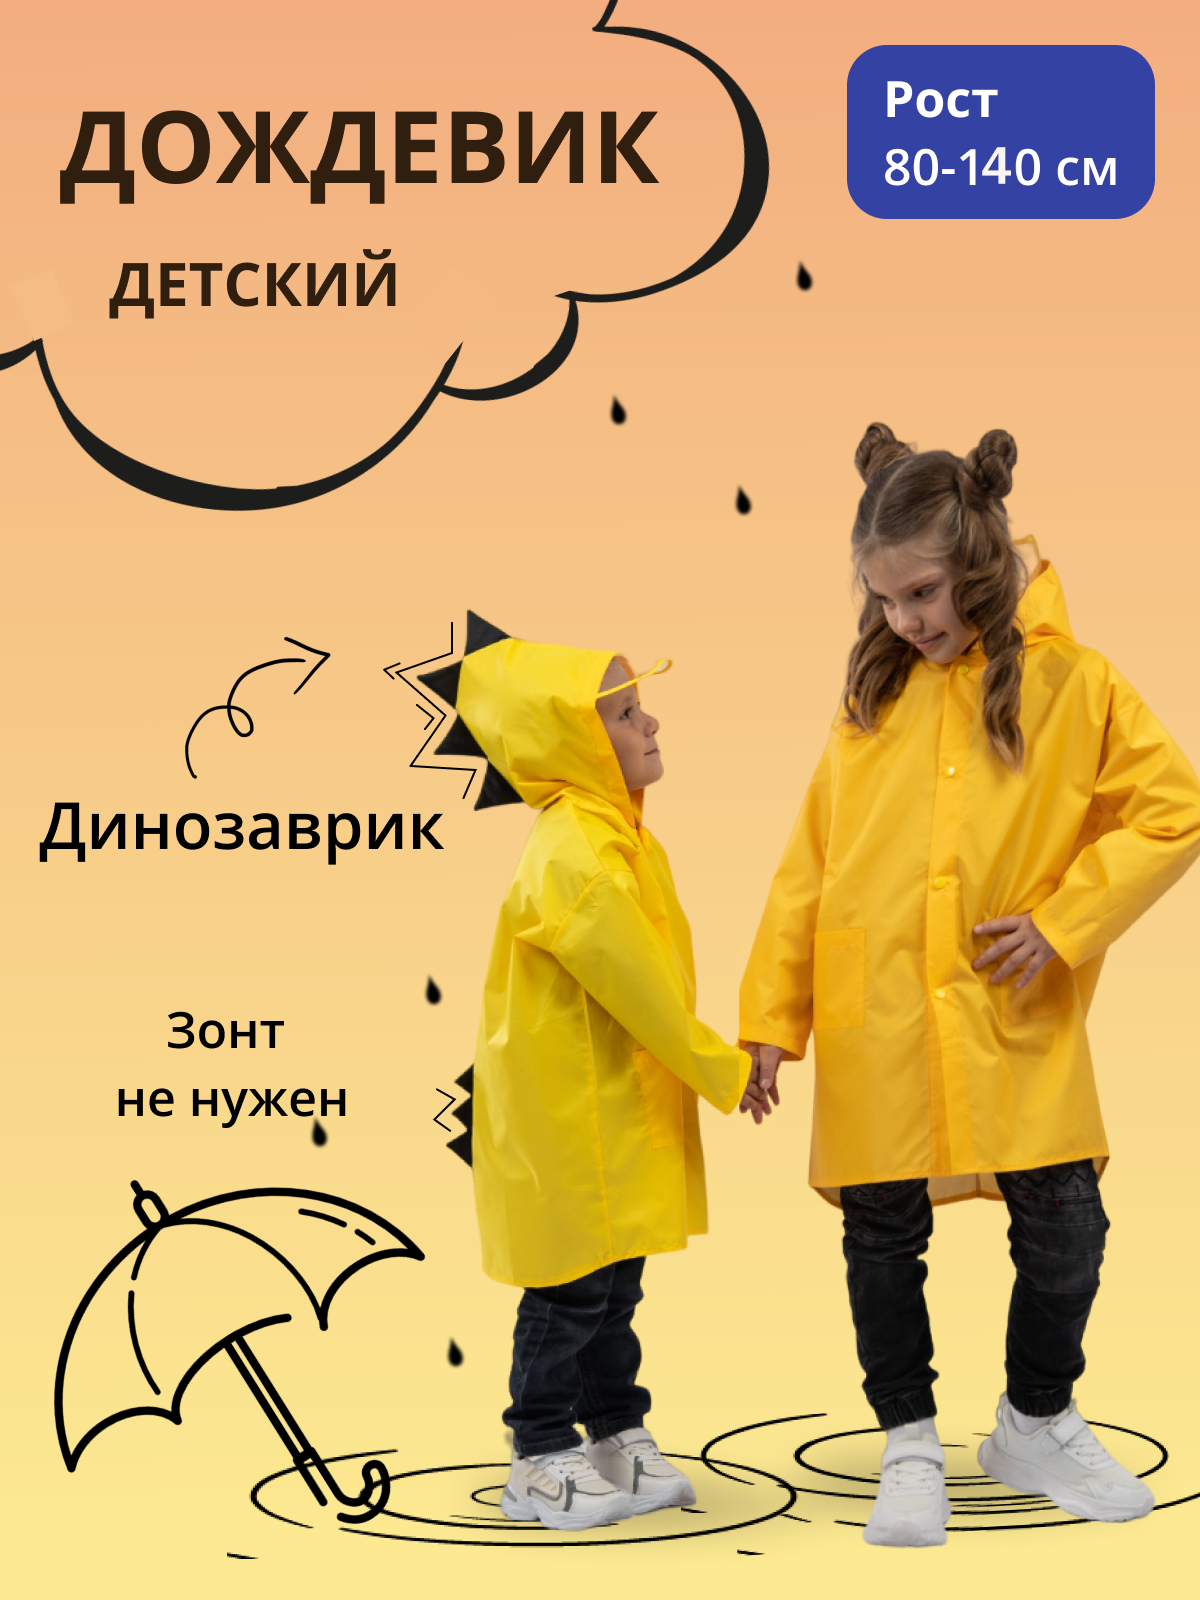 Дождевик детский Под дождем 122855956, желтый, 110 дождевик пончо взрослый тонкий желтый